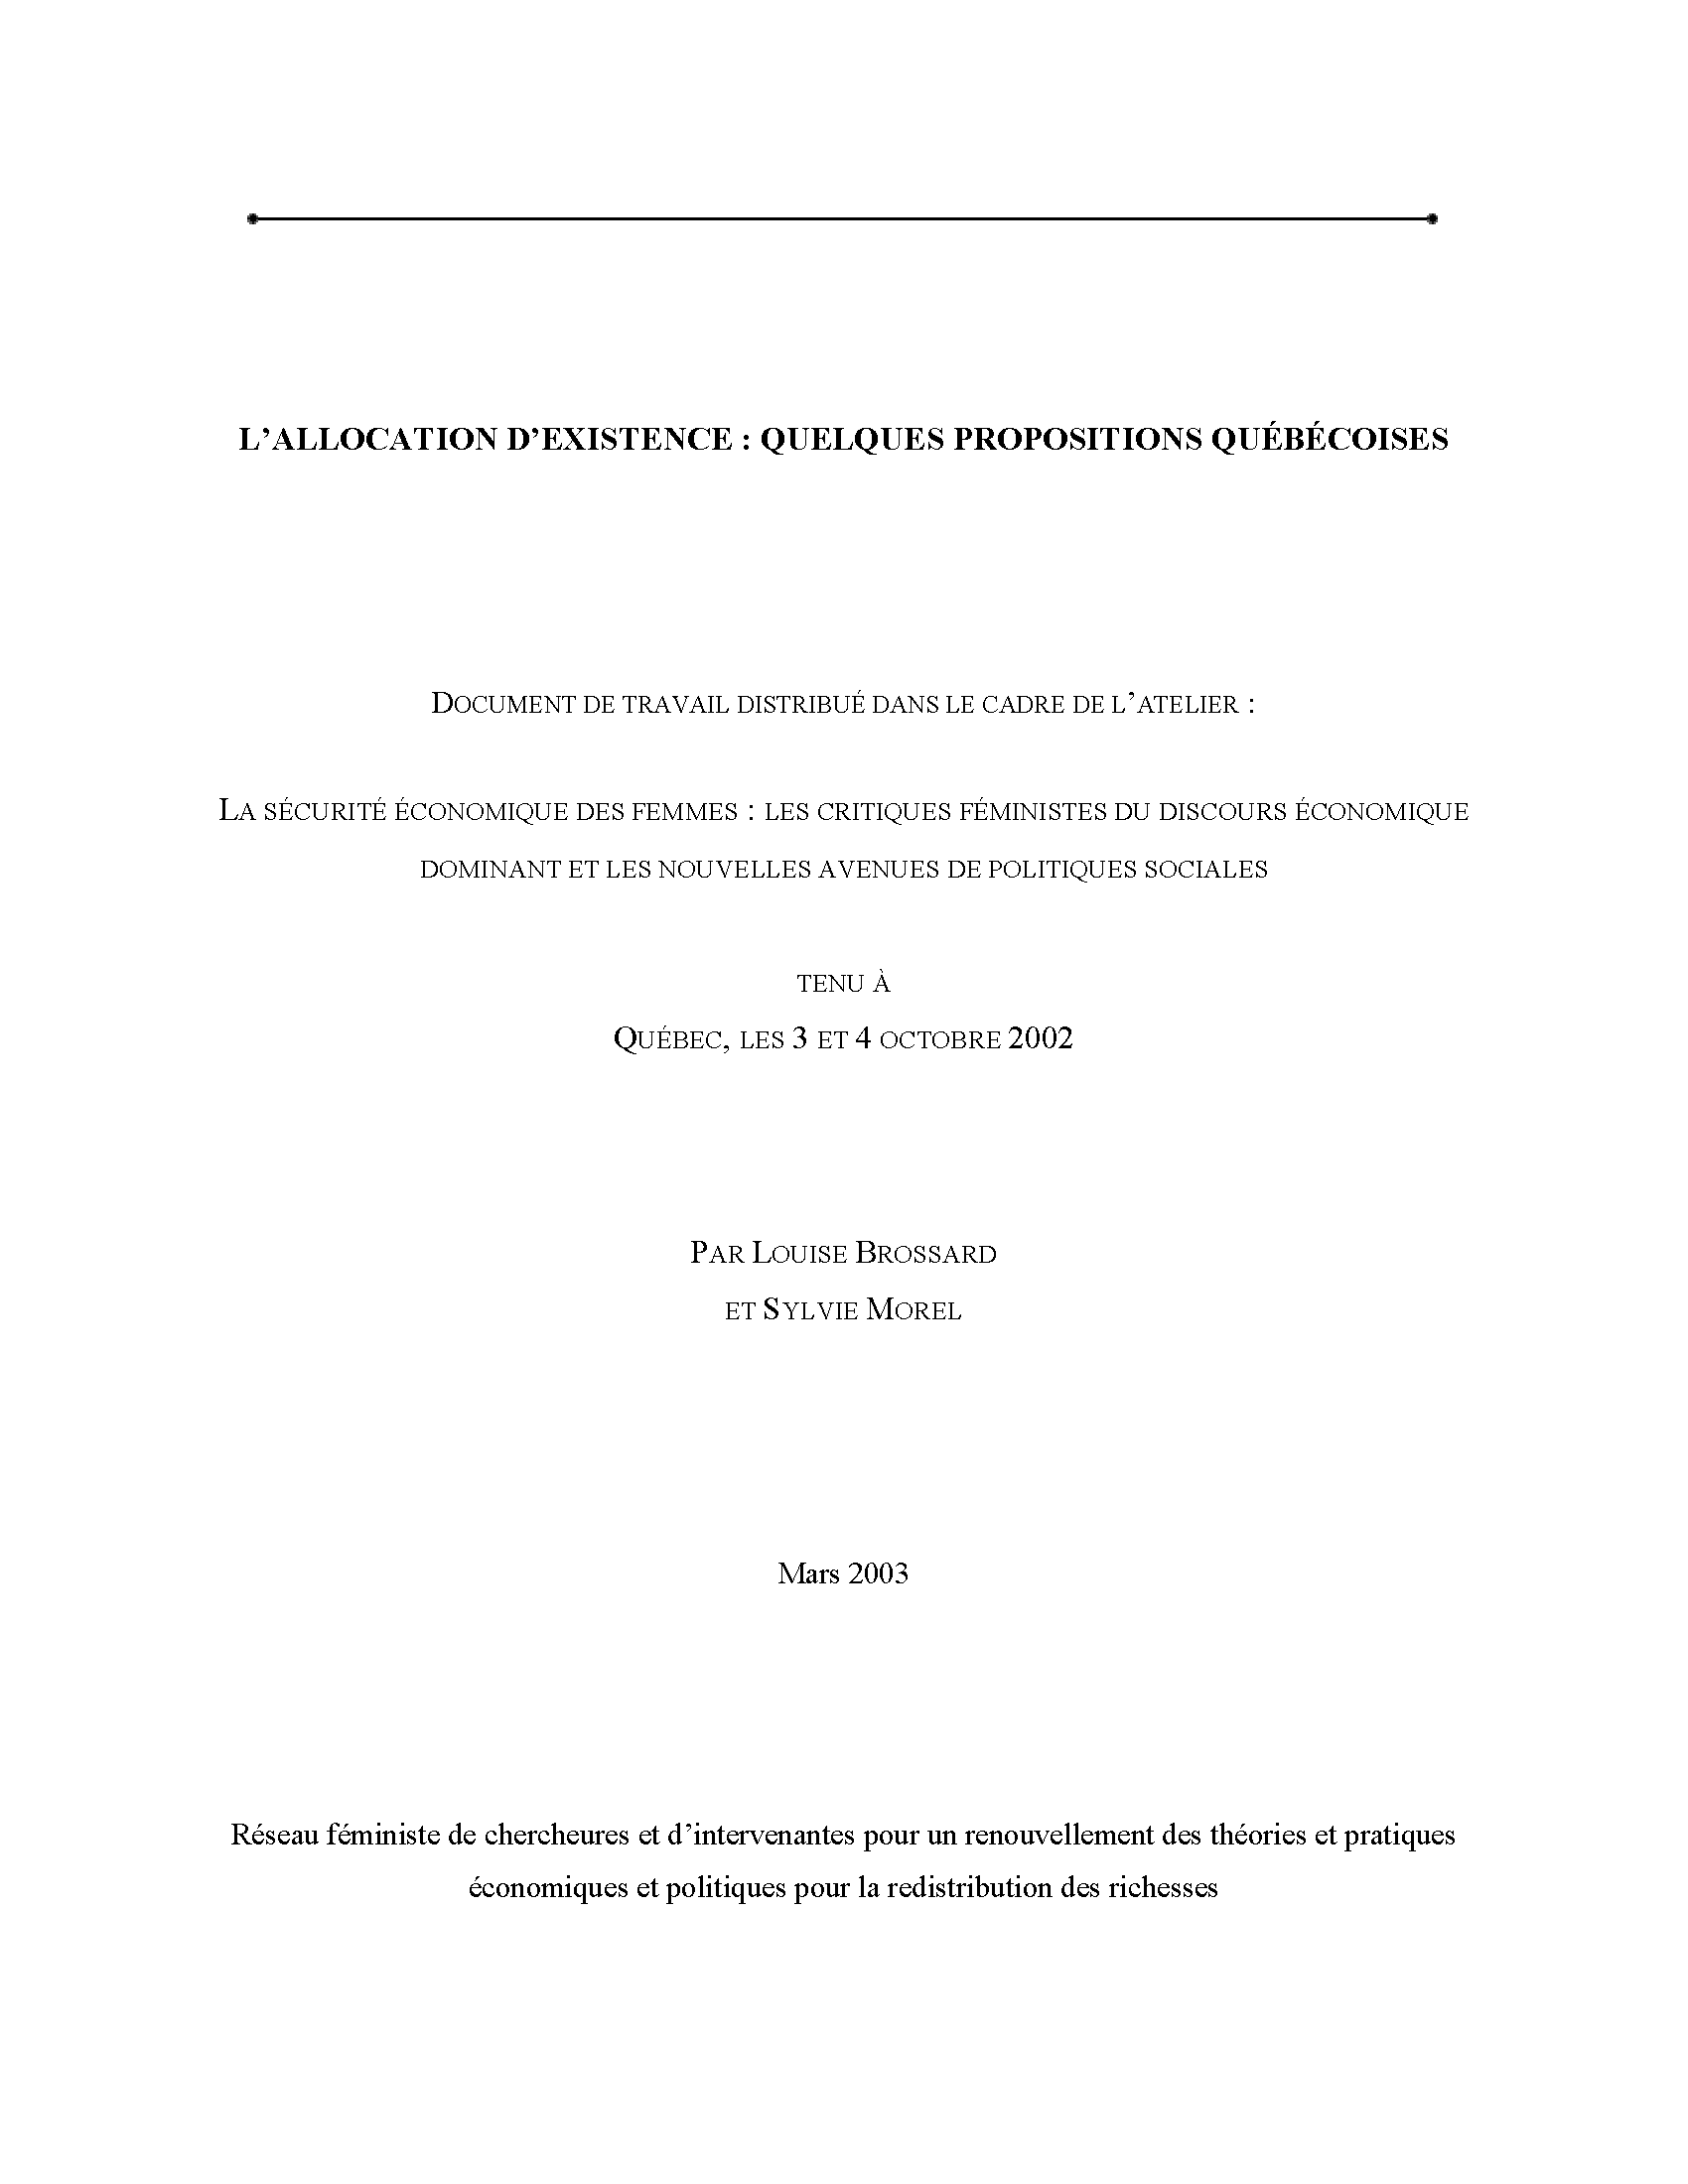 Couverture du document : L'allocation d'existence : quelques propositions québécoises